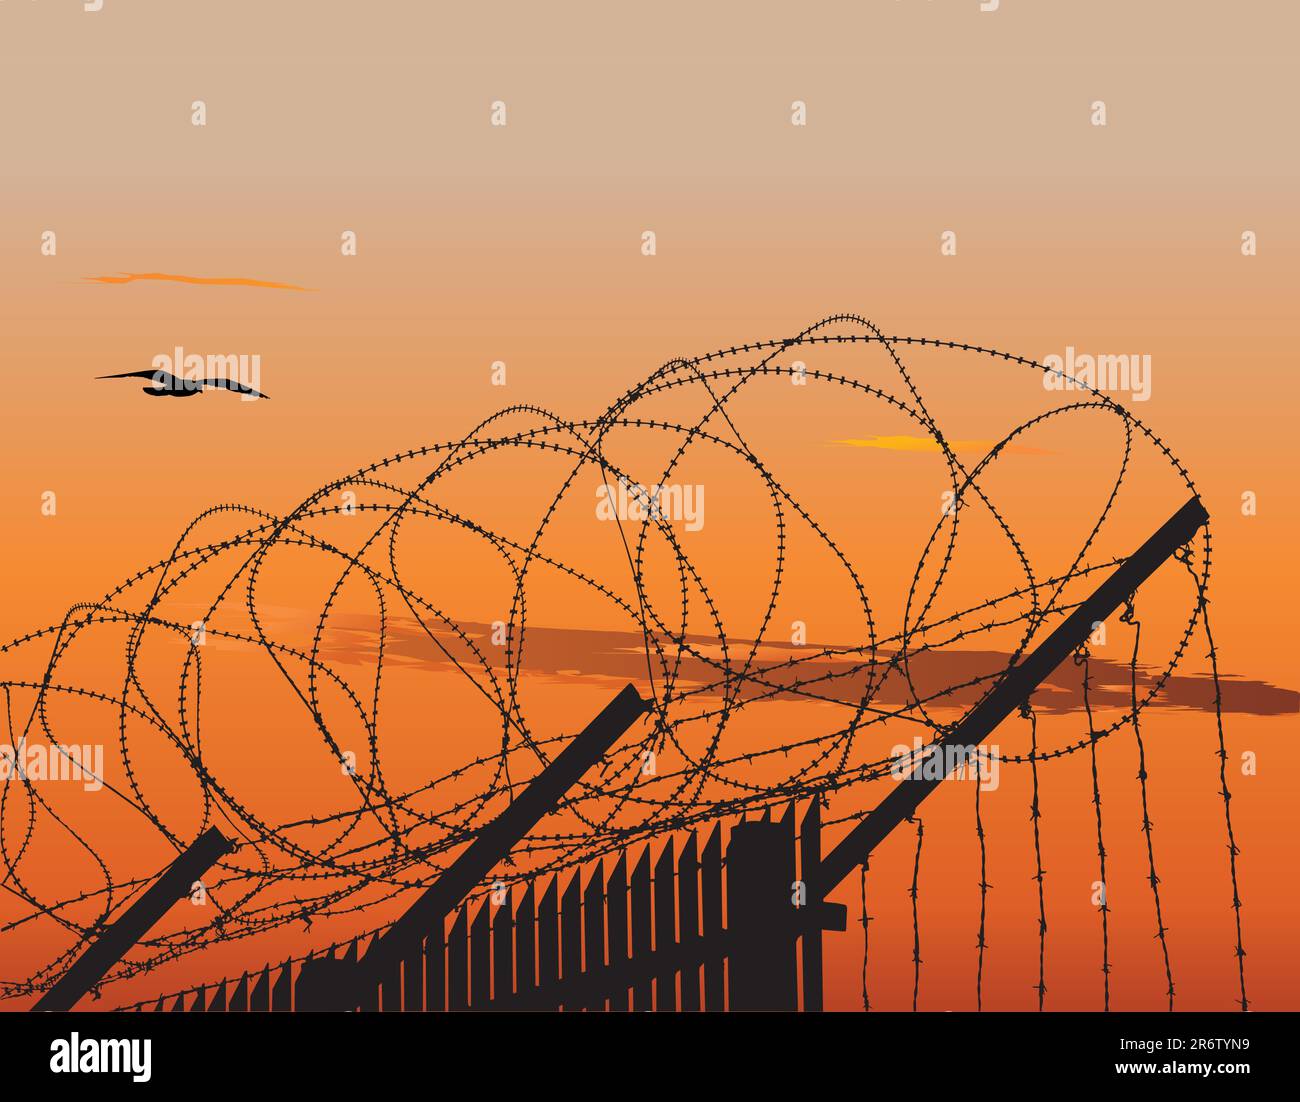 Vector illusration de clôture métalliques surmontés de barbelés contre sunset sky Illustration de Vecteur